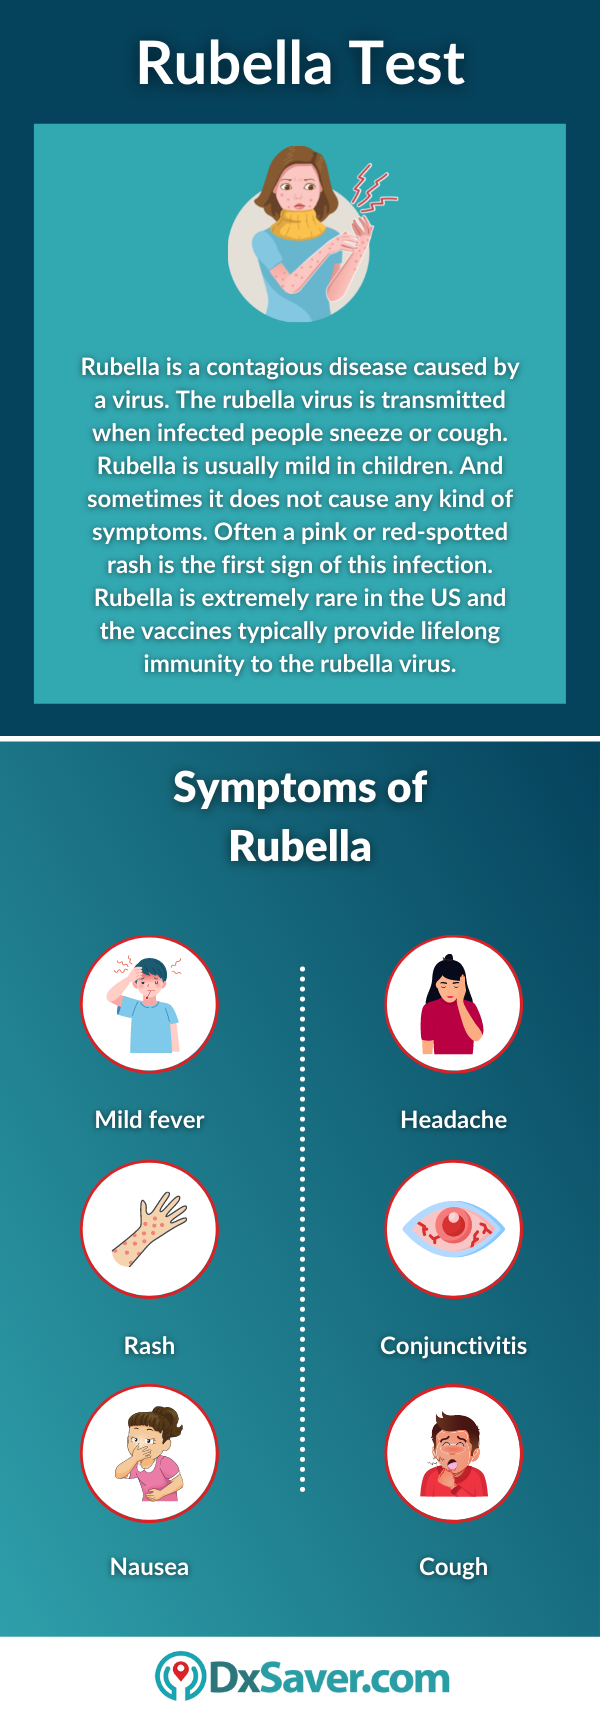 Rubella Test and Symptoms of Rubella